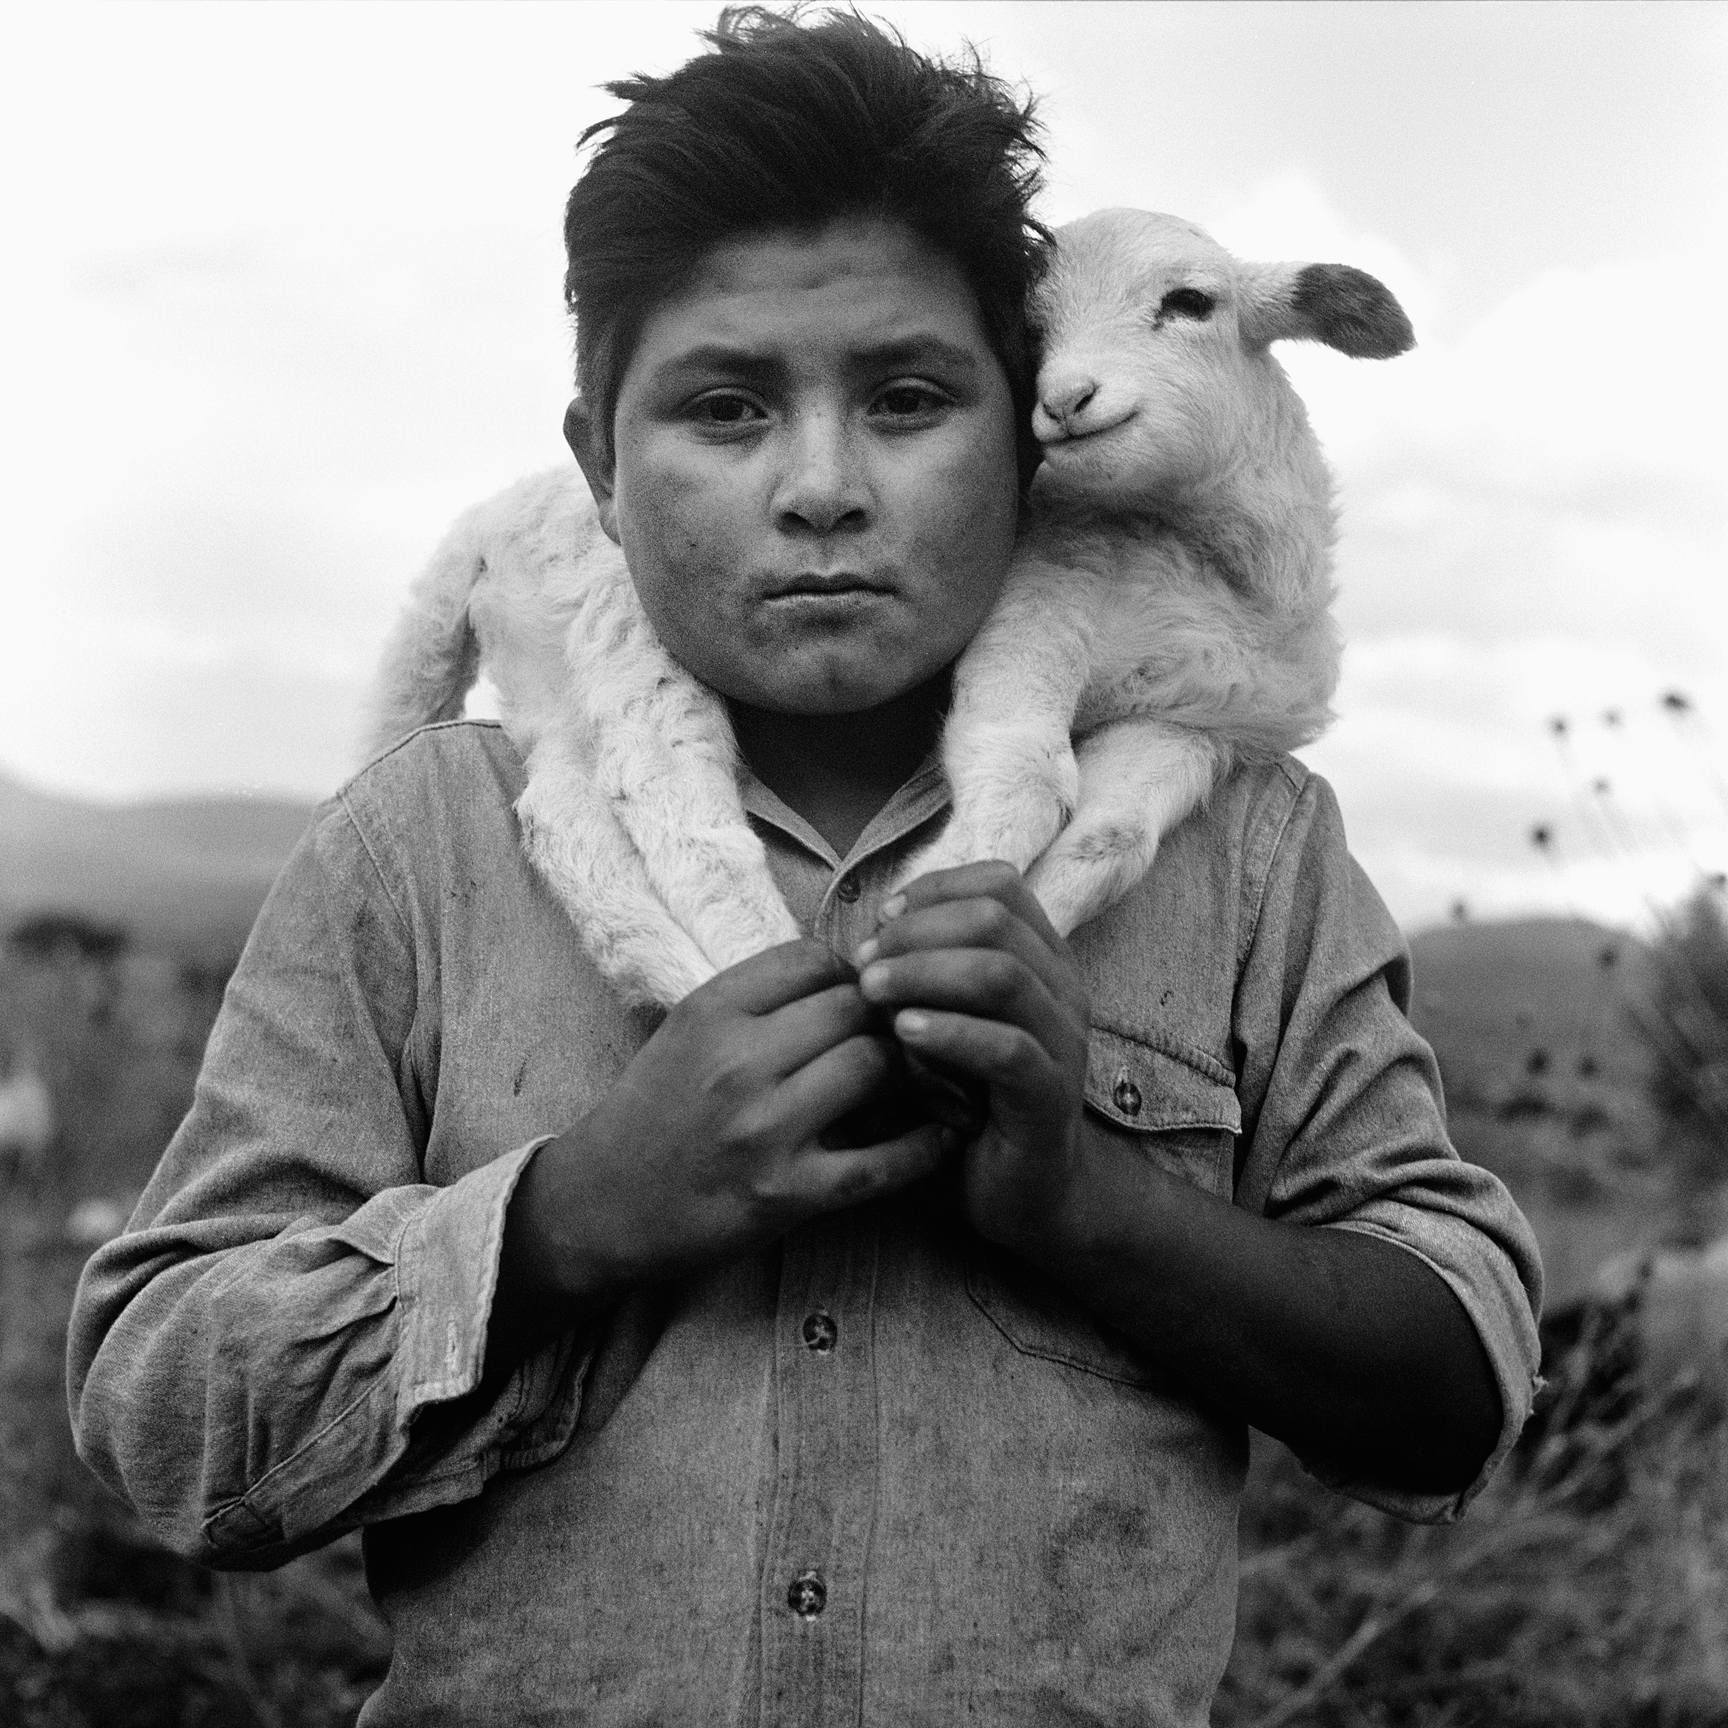 Shepherd/Mexico